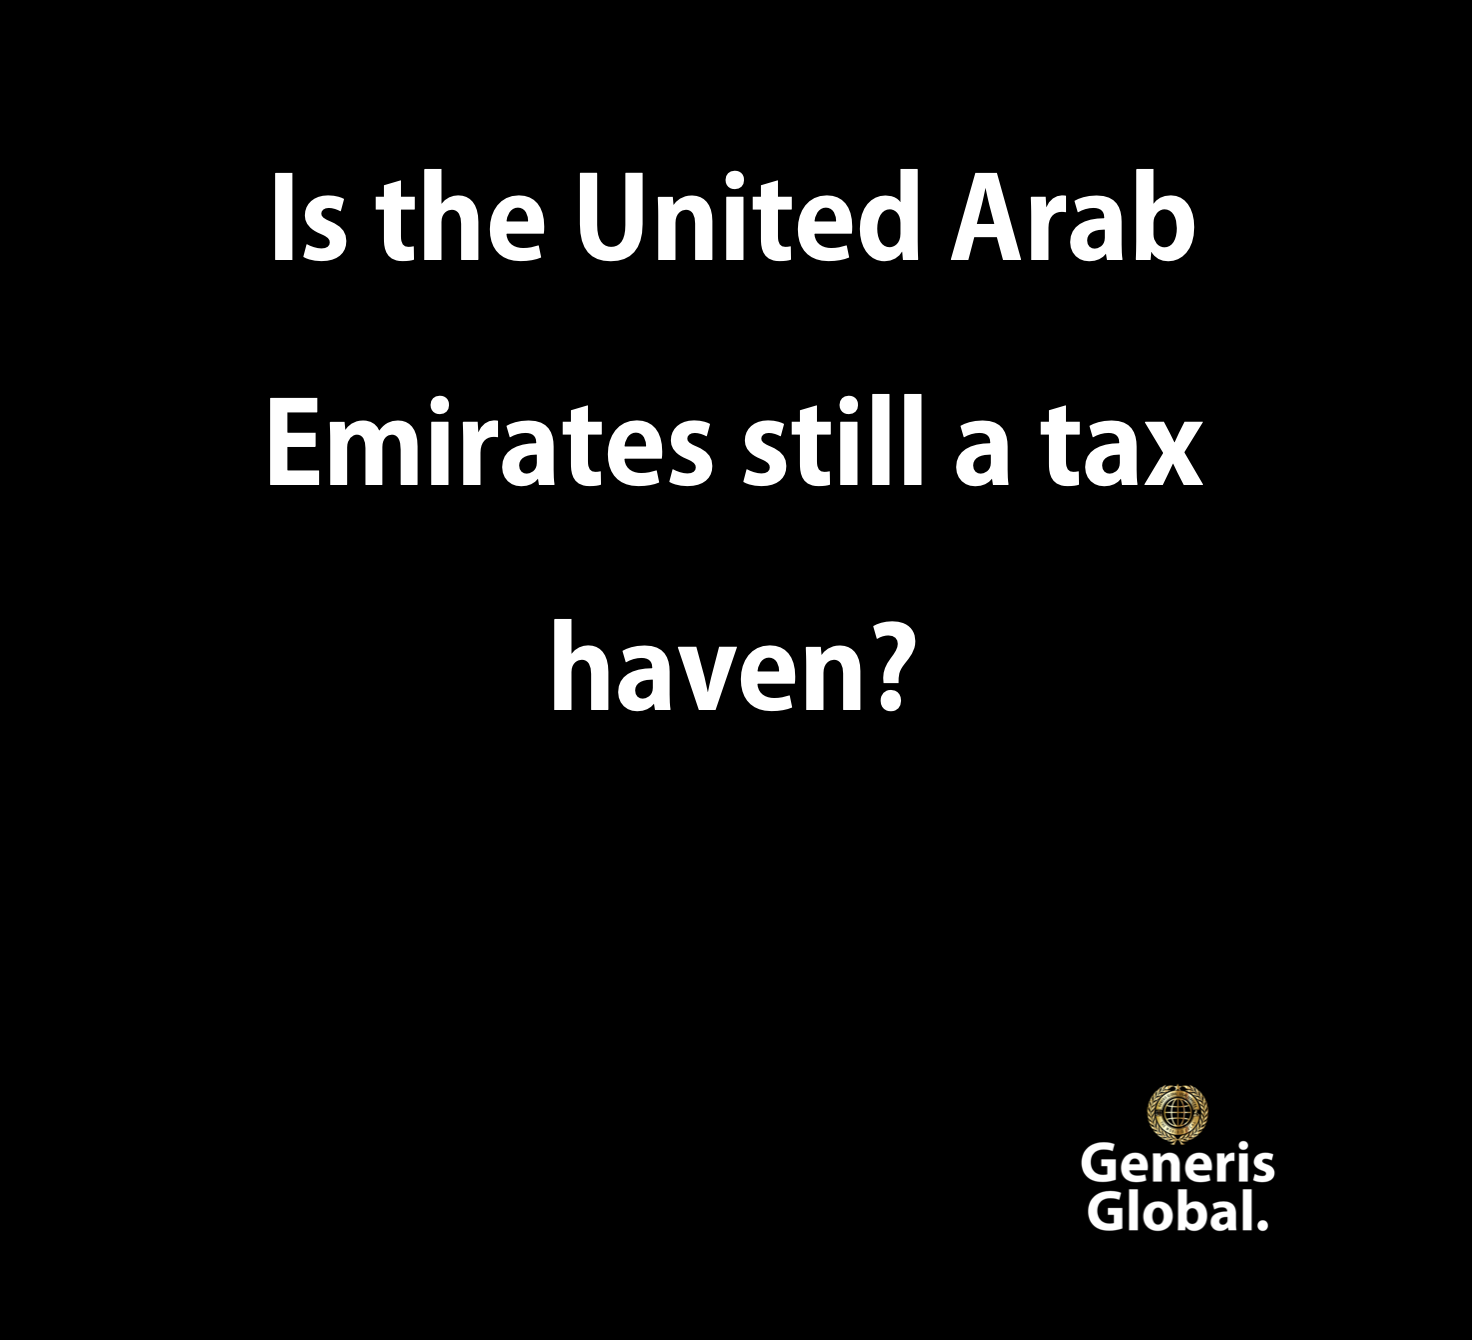 United Arab Emirates still a tax haven